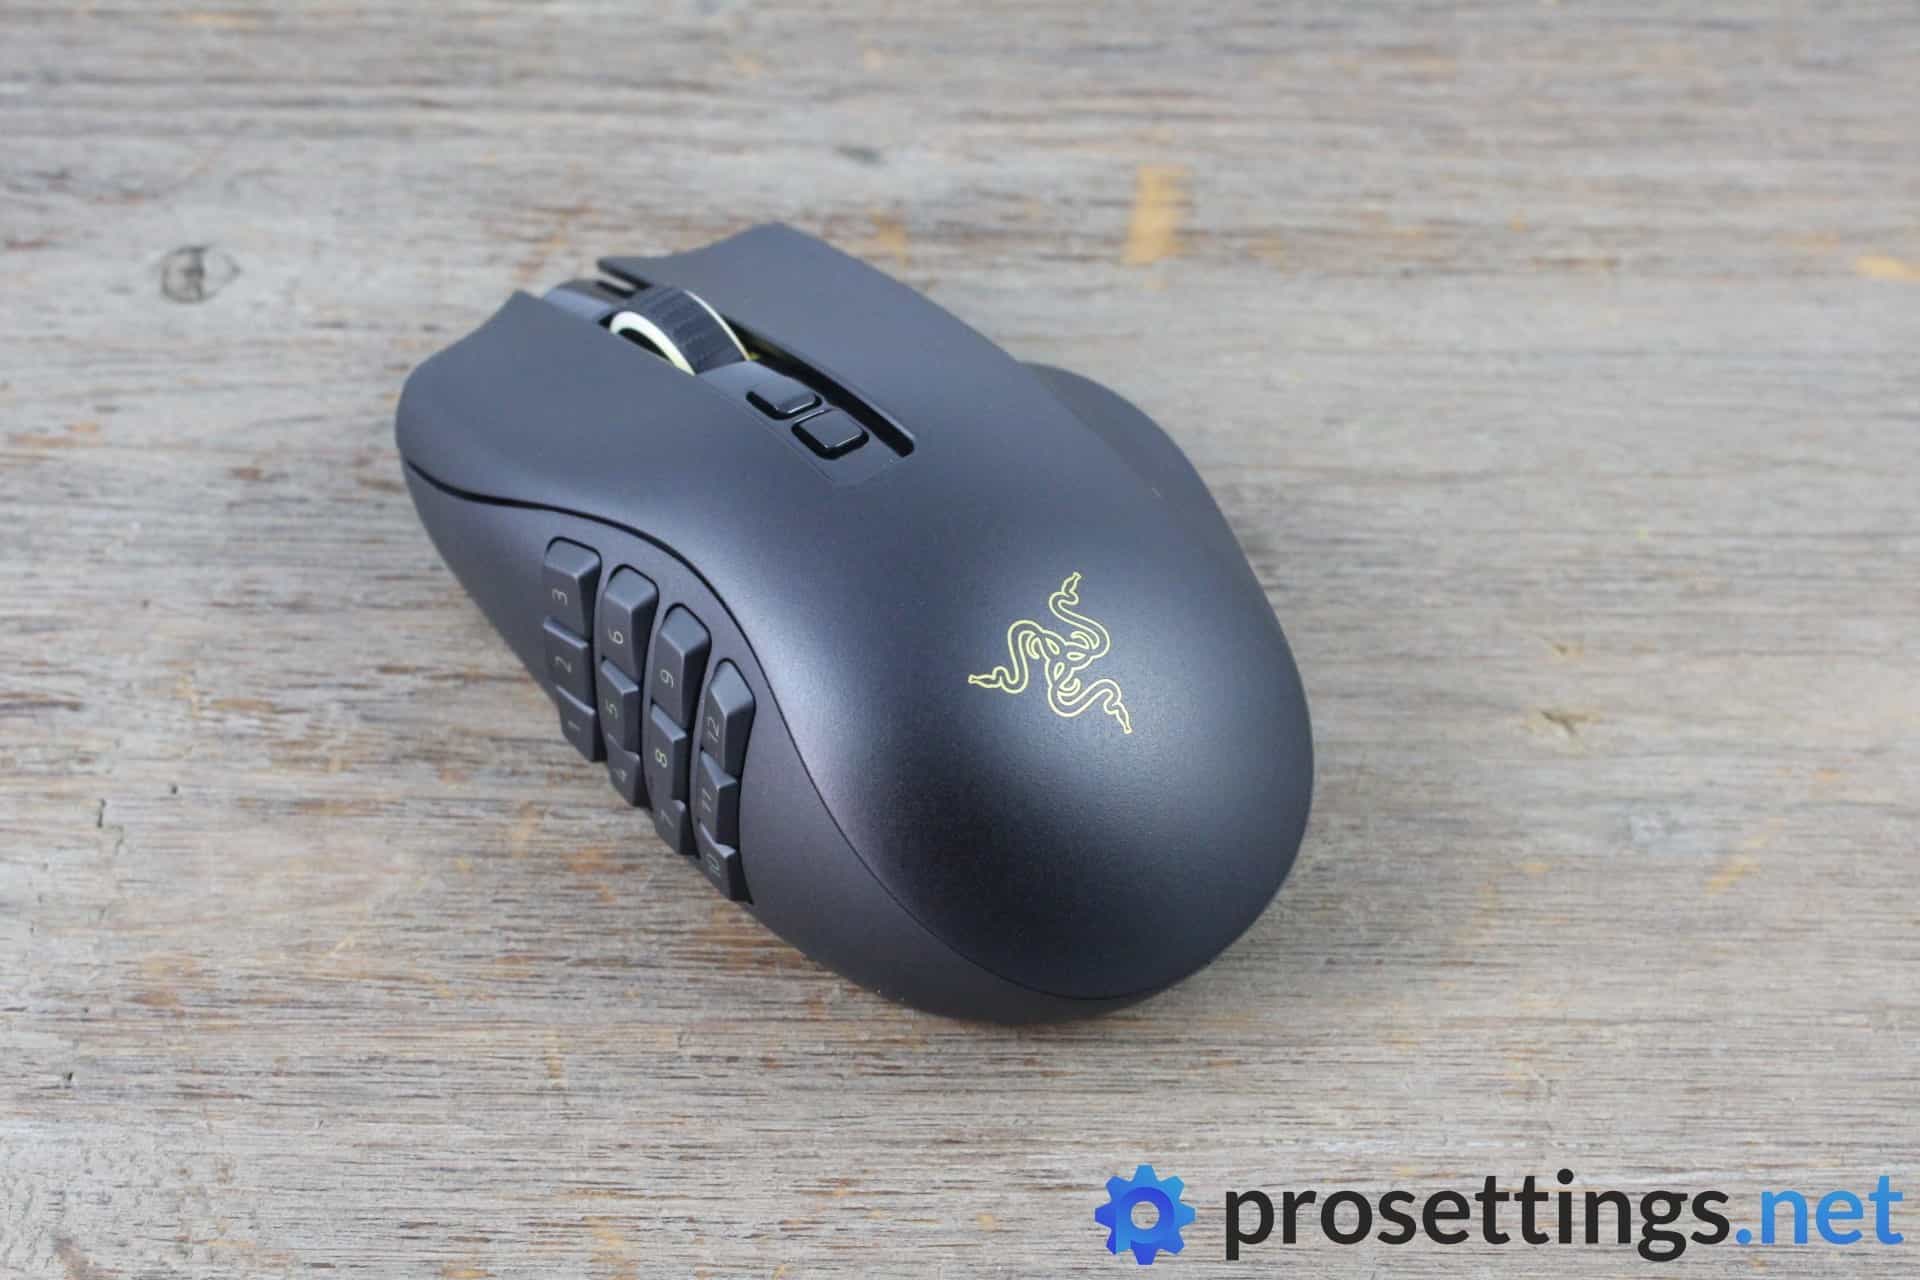 Razer Naga Pro Review Mouse